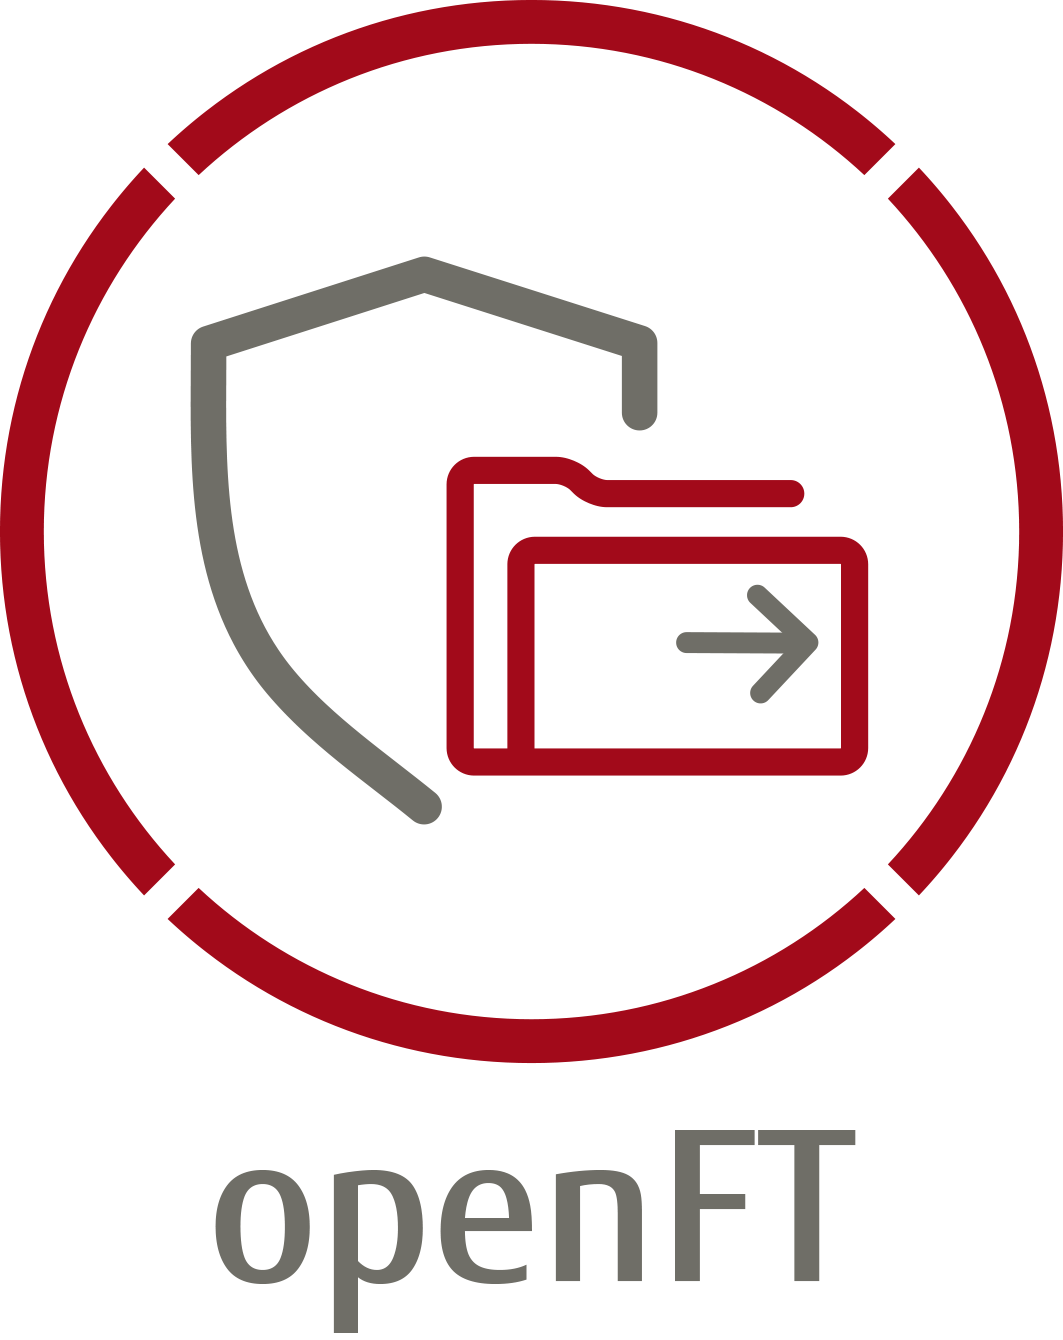 openFT Logo: Ein roter Kreis indem ein graues Schild und ein roter Ordner mit einem grauen Pfeil abgebildet ist. Unterschrift openFT.